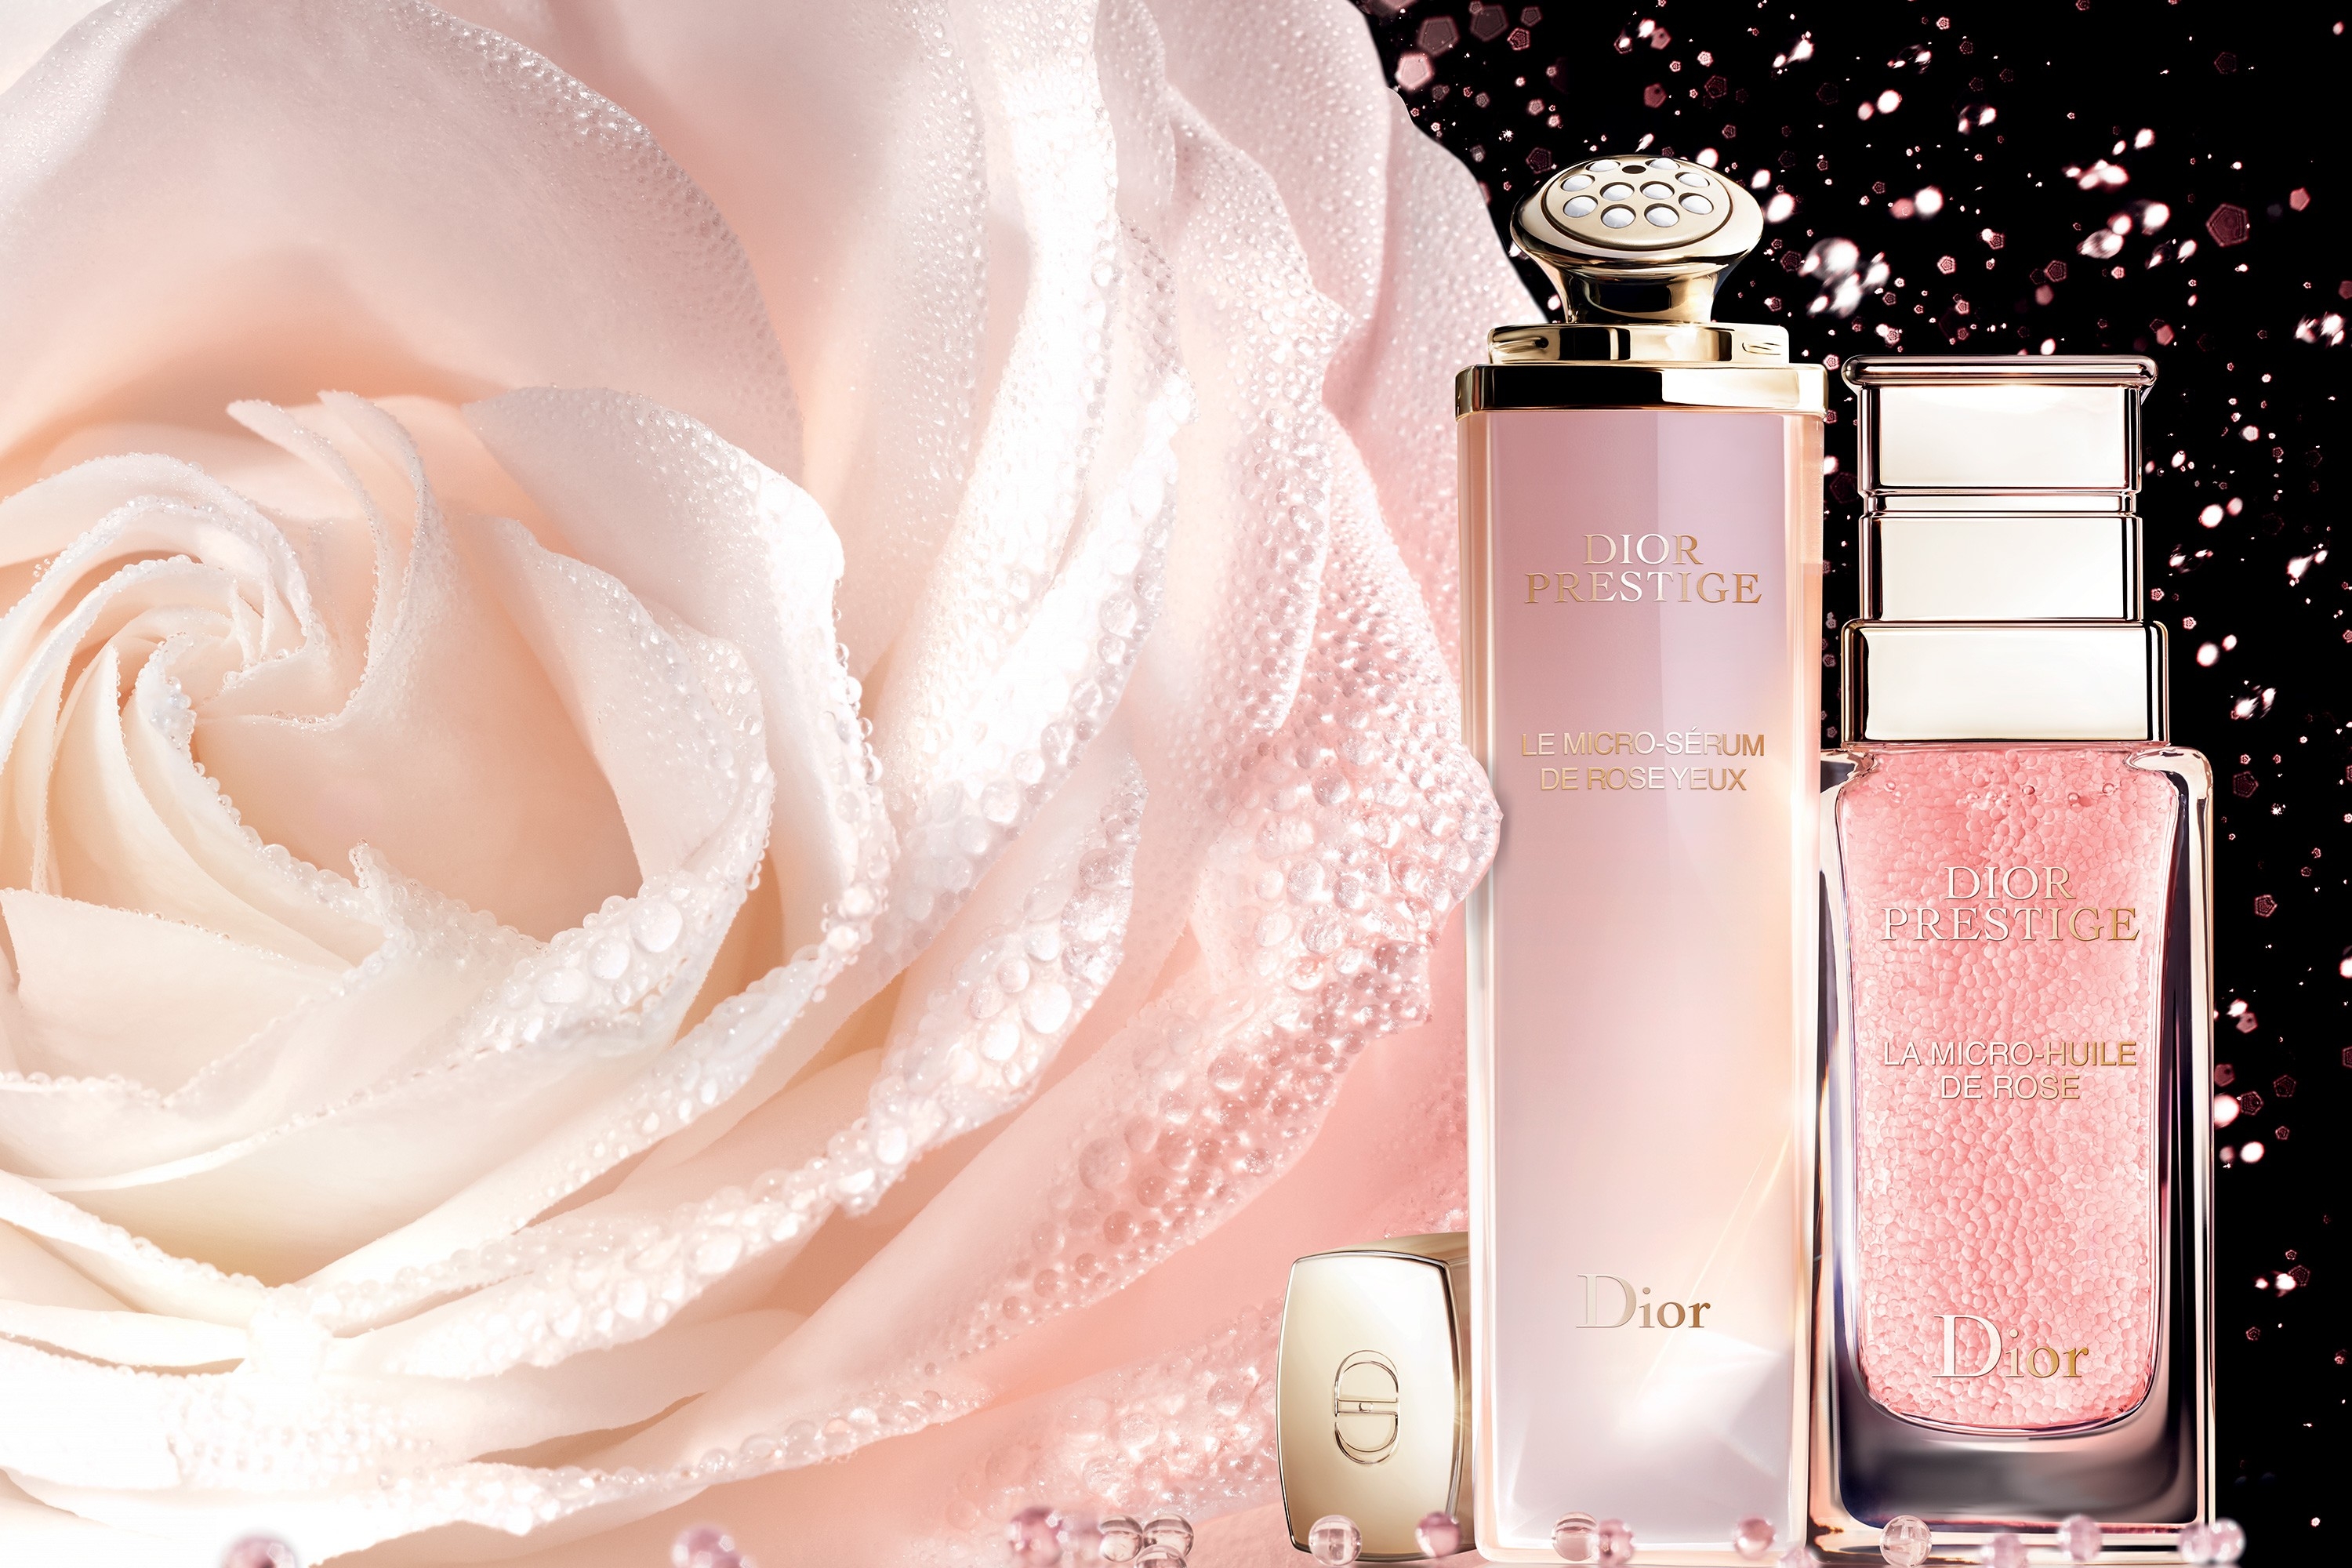 Dior Prestige Le MicroSérum de Rose Yeux Advanced